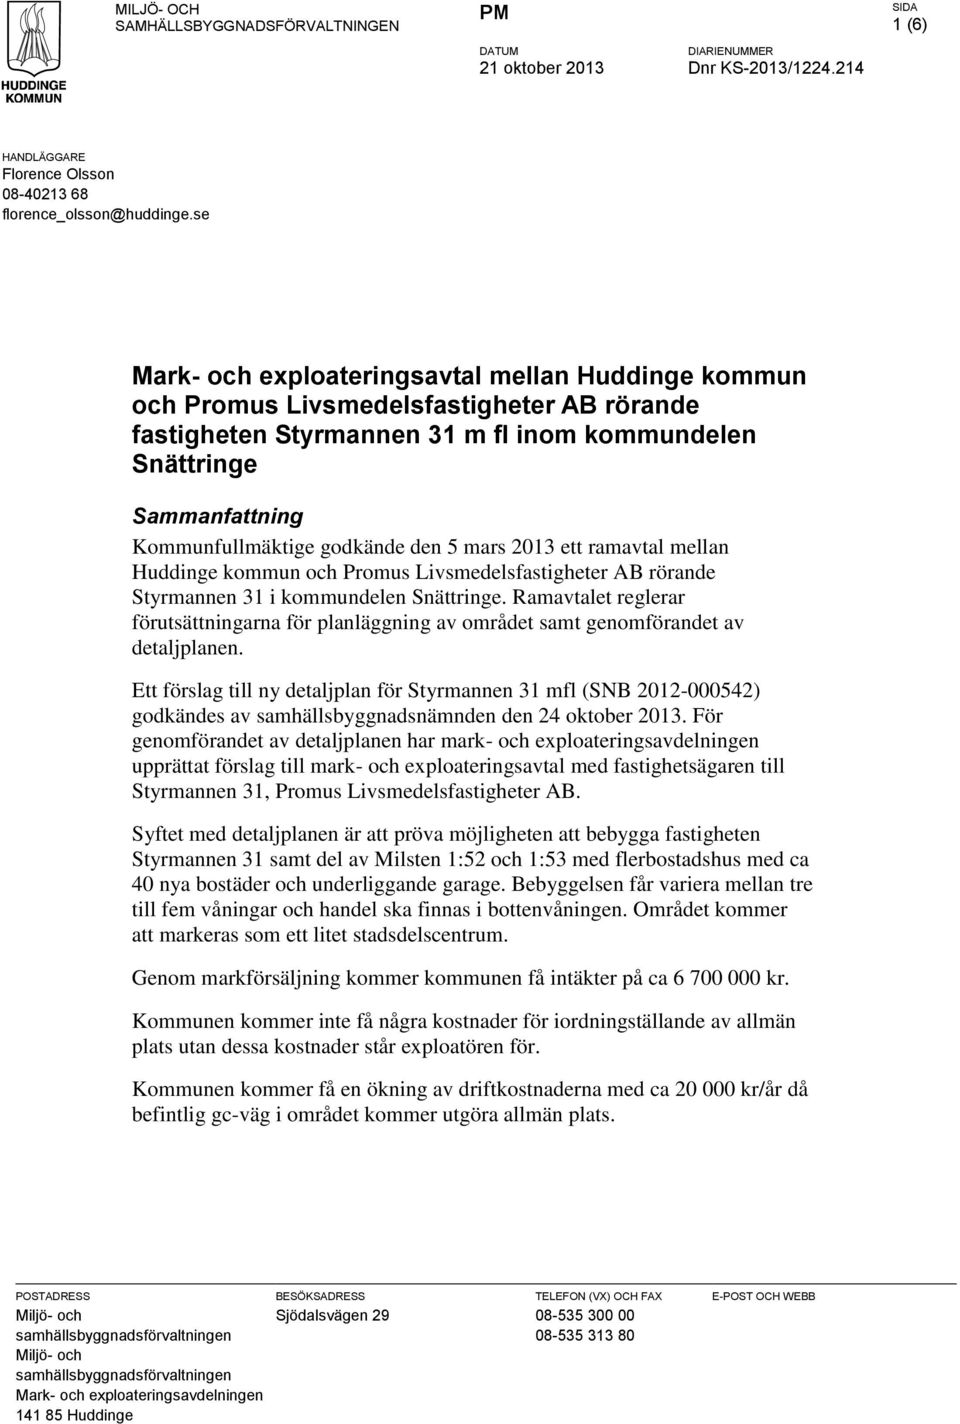 den 5 mars 2013 ett ramavtal mellan Huddinge kommun och Promus Livsmedelsfastigheter AB rörande Styrmannen 31 i kommundelen Snättringe.